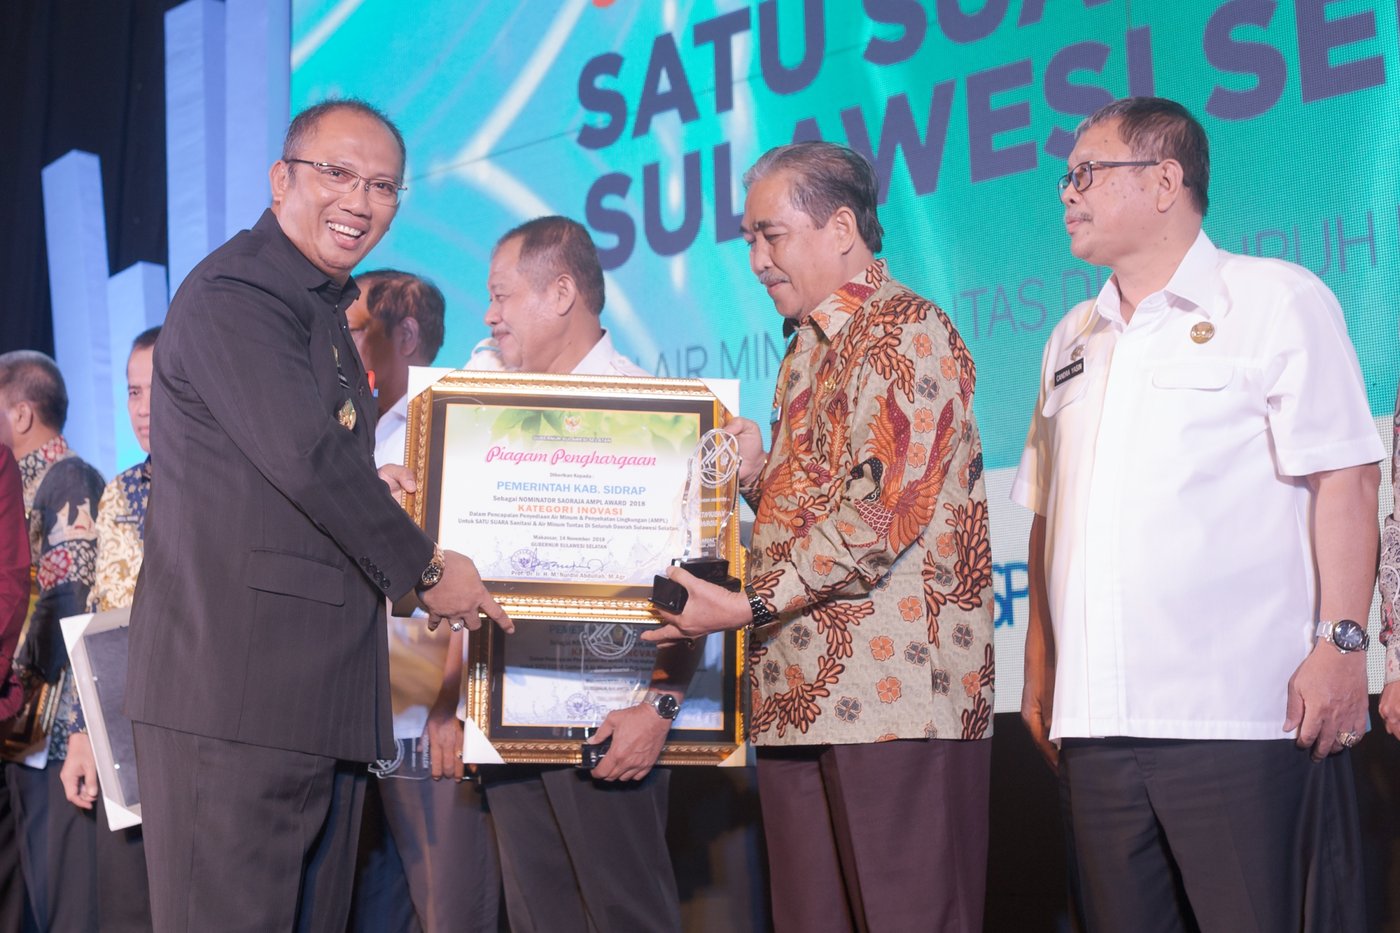 Gubernur Sulsel diwakili oleh Sekda Provinsi Sulawesi Selatan Ashari Fakhsirie Radjamilo menyerahkan Saoraja AMPL Awards kepada pemerintah kabupaten